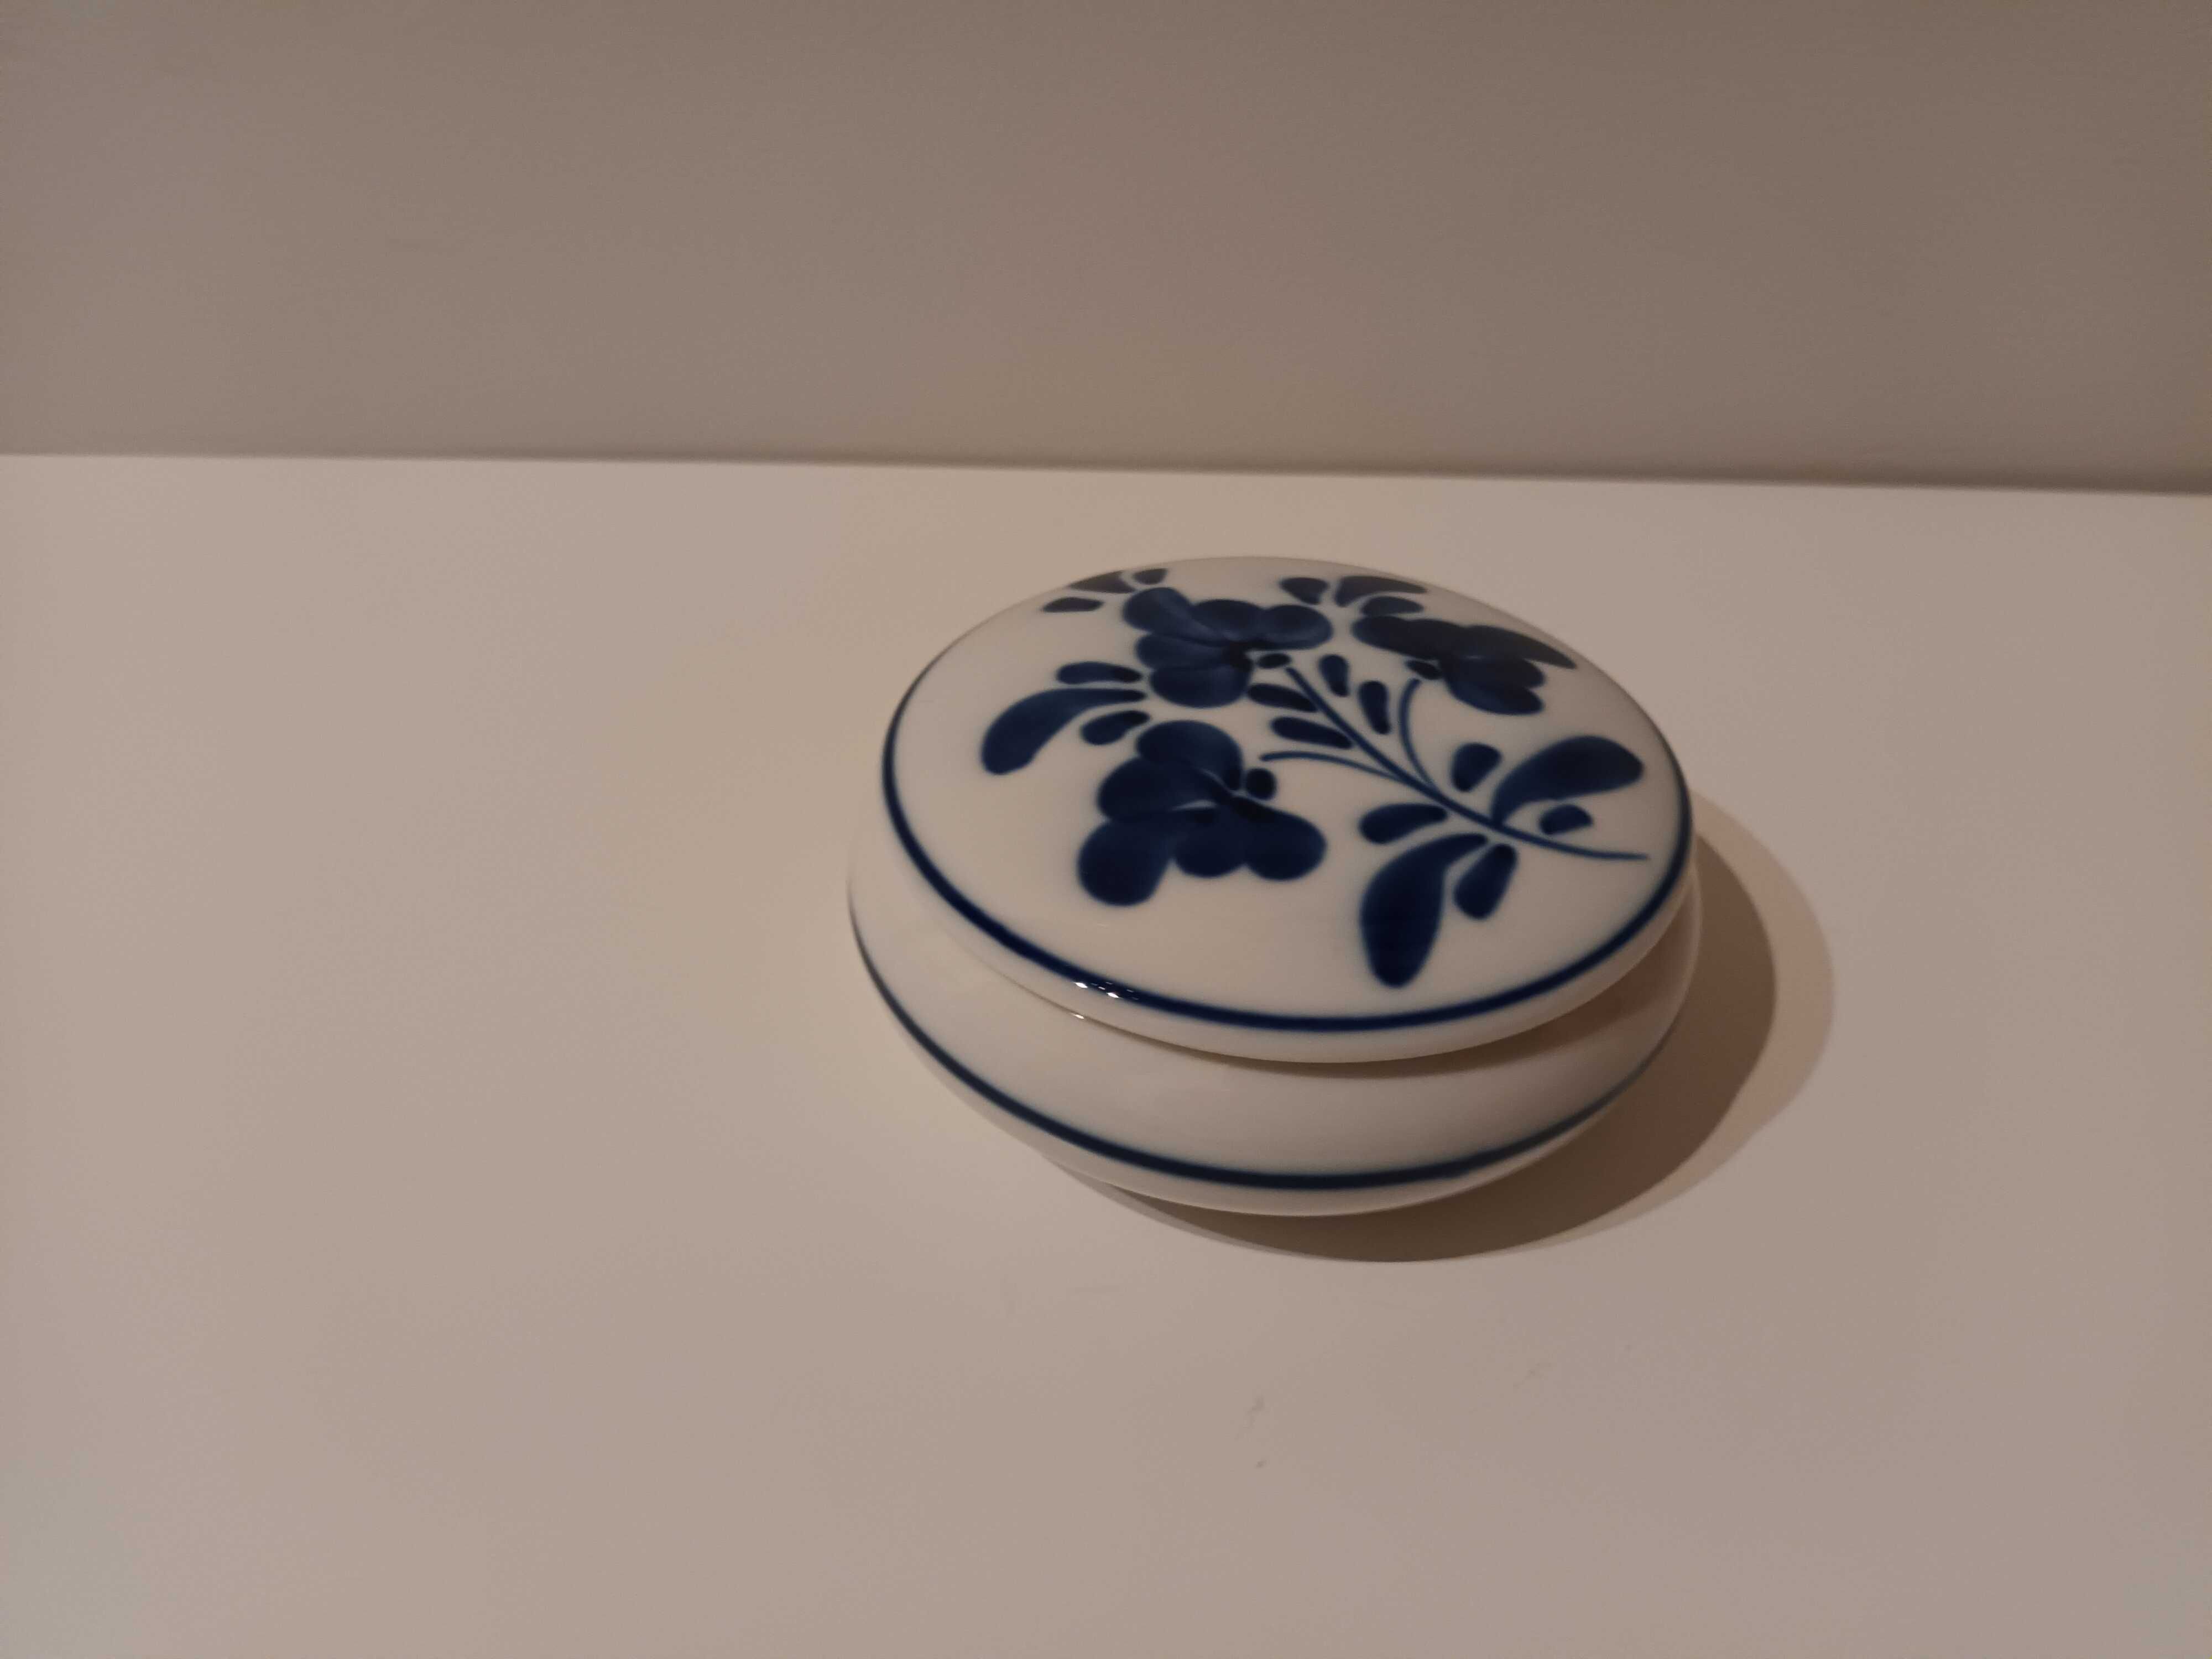 Caixinha de porcelana branca e azul